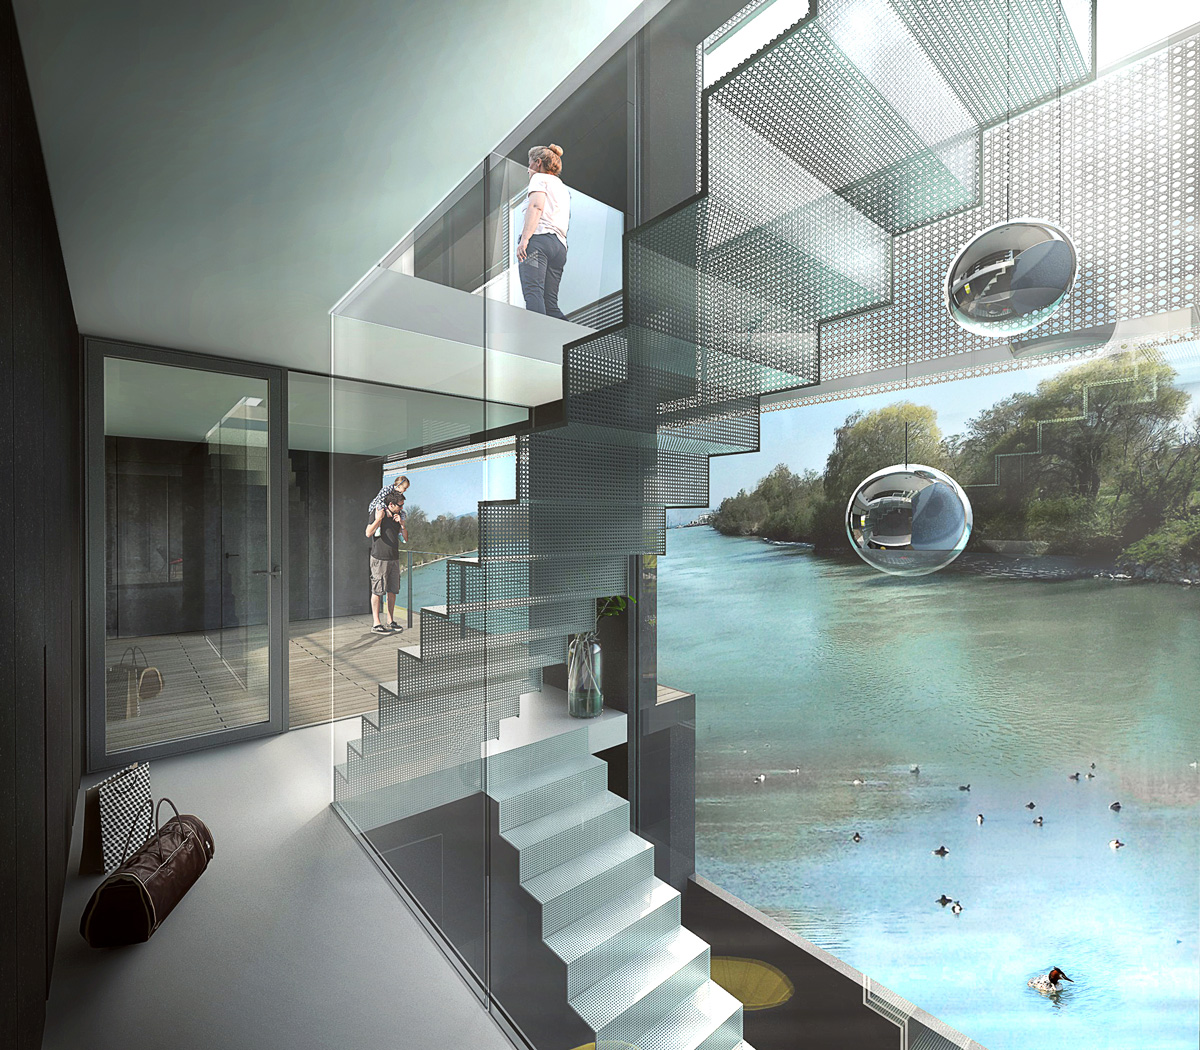 Rénovation d'une péniche bateau en maison flottante contemporaine par Dank, architecte sur Lyon avec une piscine à débordement. Escalier ouvert en métal et verre avec vue sur la rive